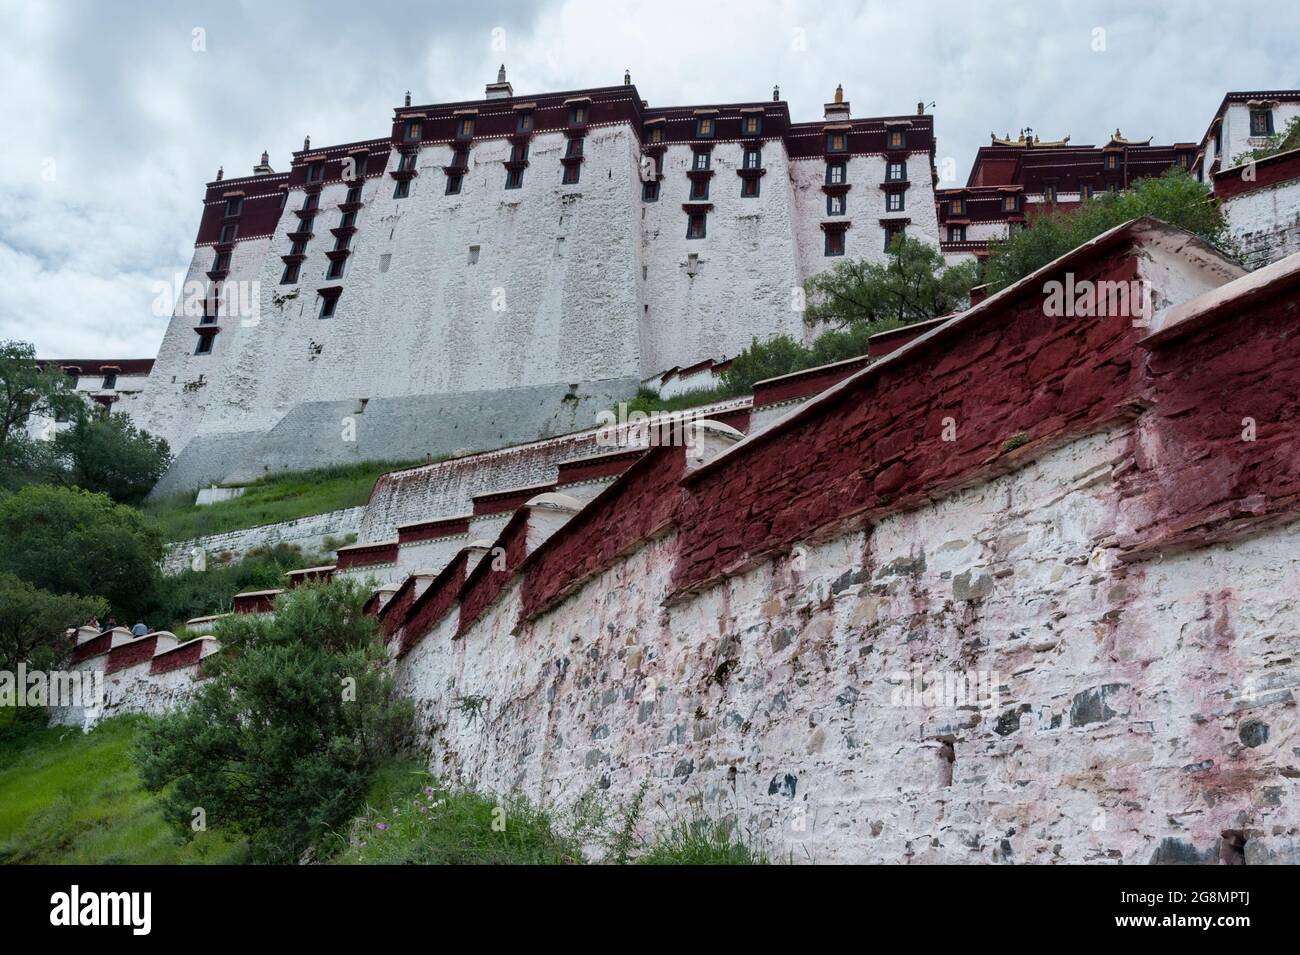 LHASA, TIBET - 17 AGOSTO 2018: Magnifico Palazzo Potala a Lhasa, sede del Dalai lama prima dell'invasione cinese e sito patrimonio dell'umanità dell'UNESCO. Foto Stock